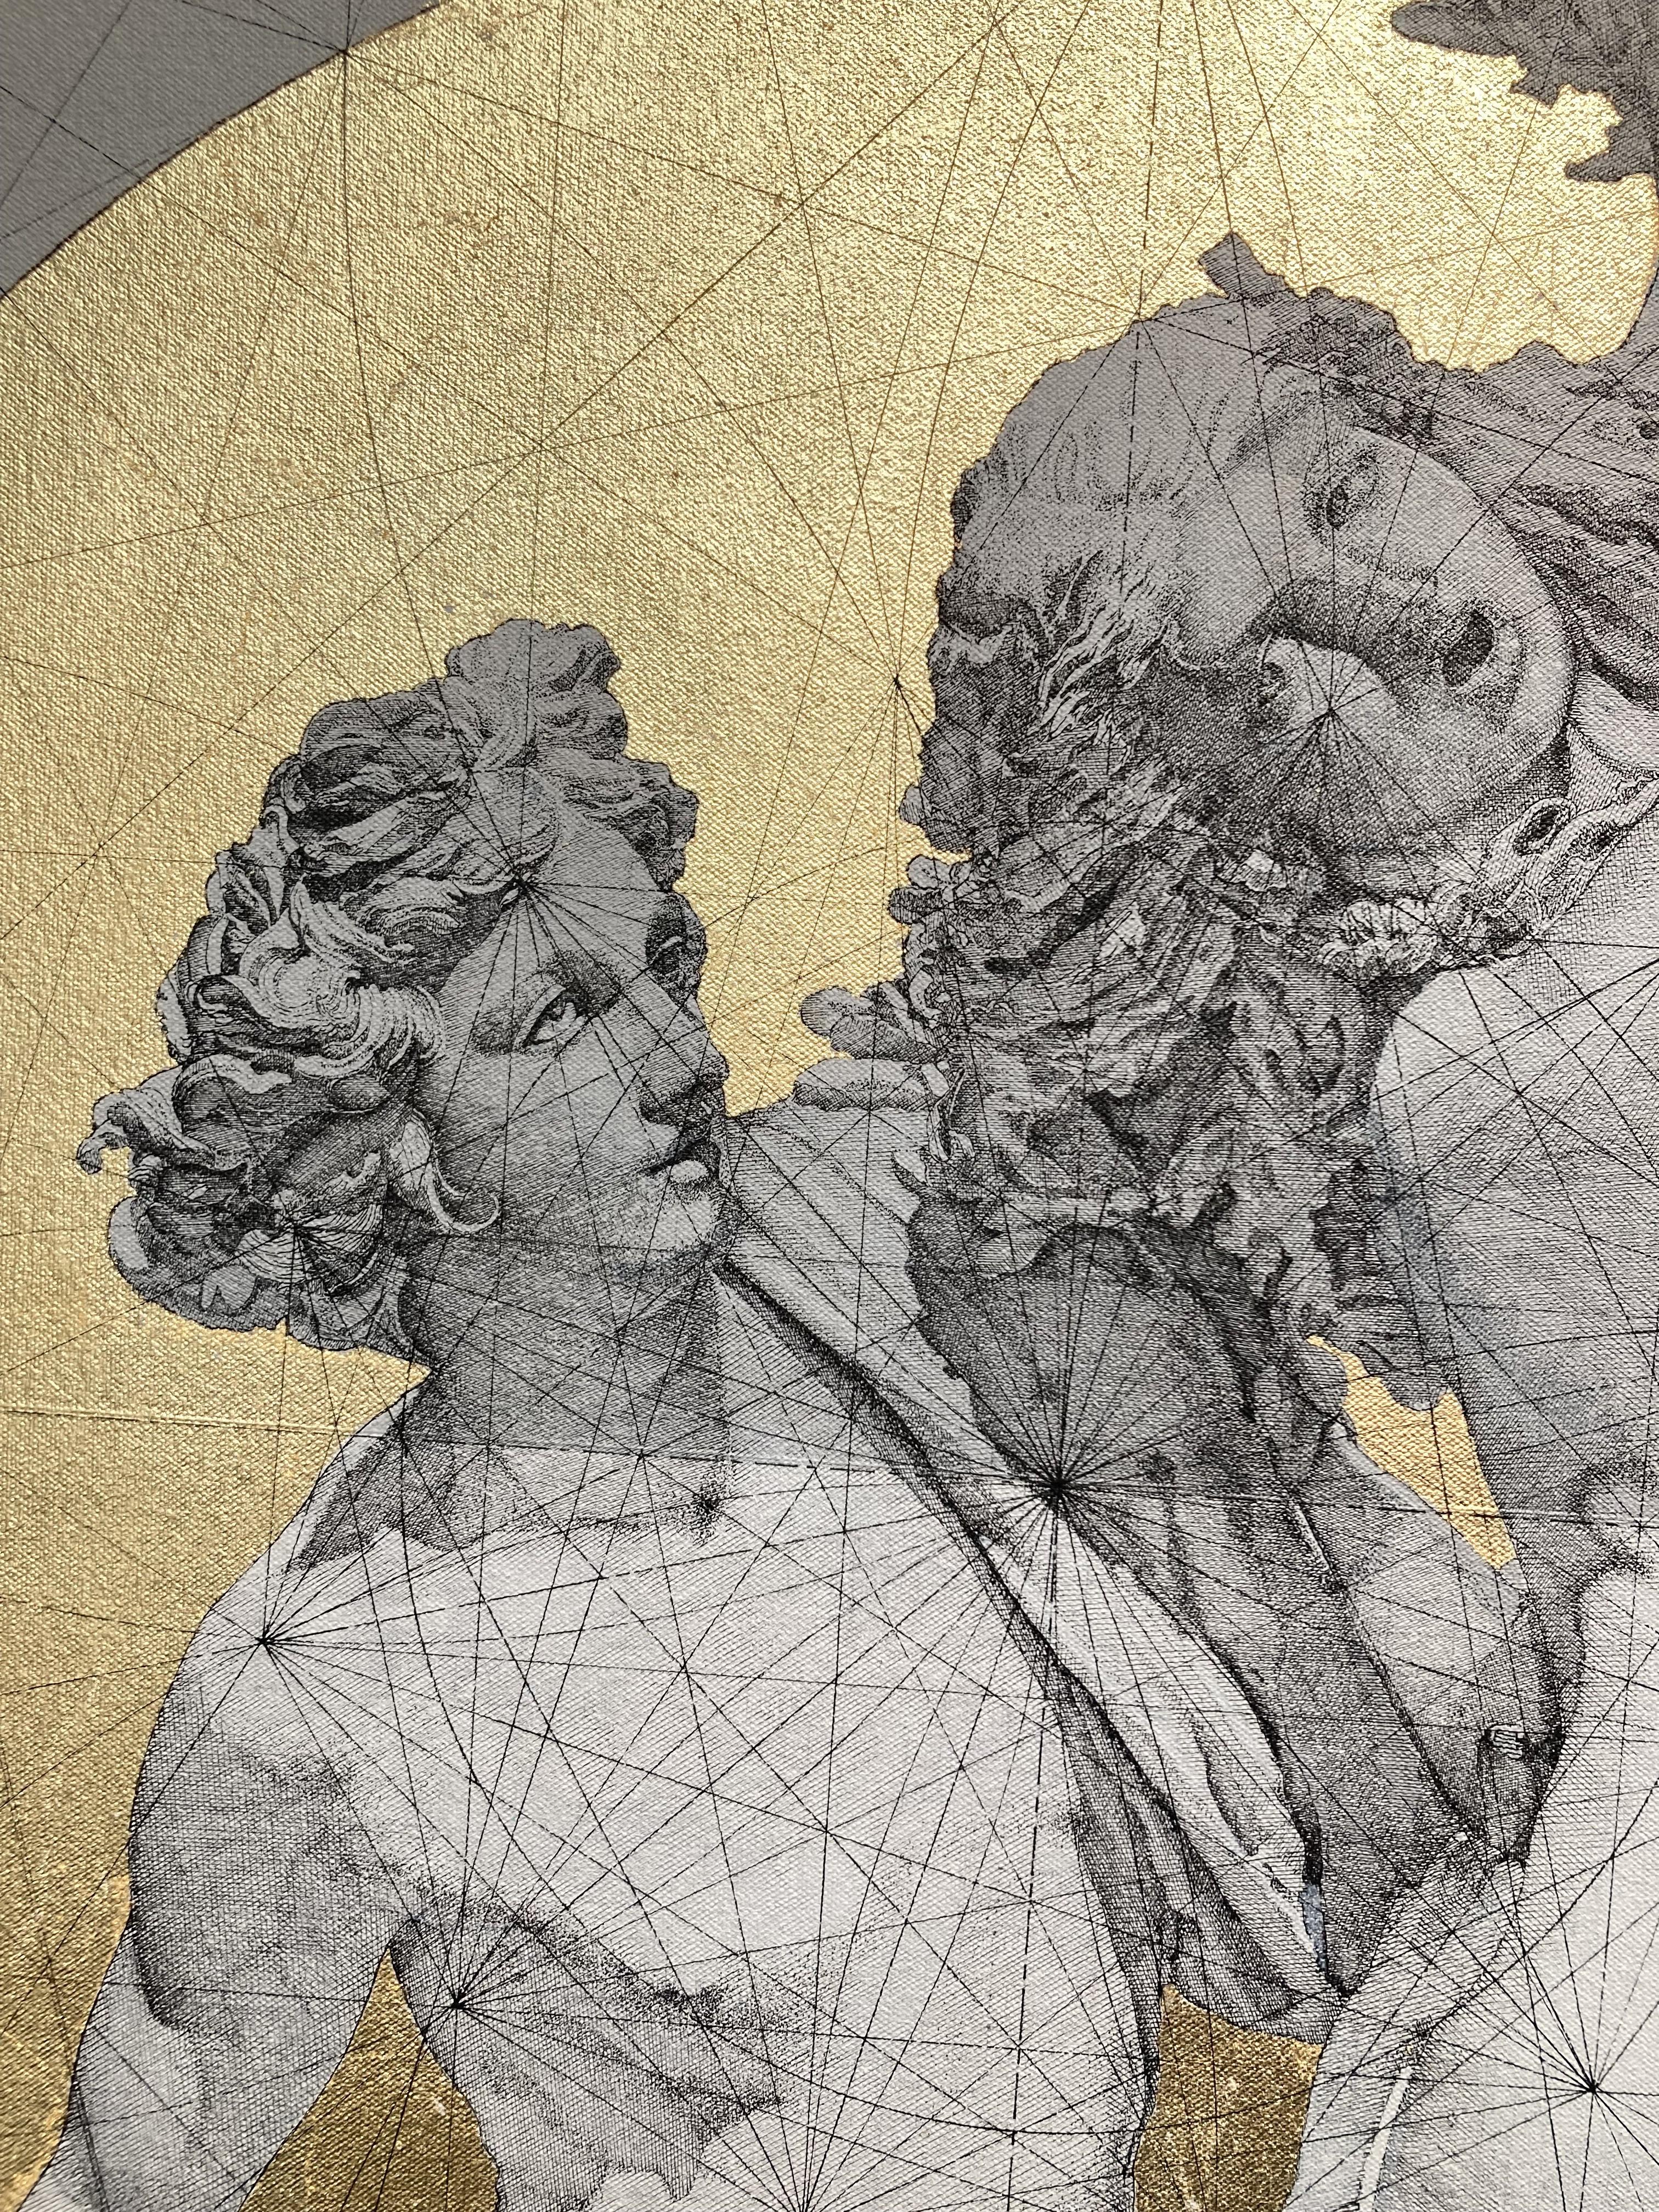 Apollon et Daphne - Mythologie grecque : dorure, encre et acrylique sur toile  - Painting de Marco Araldi